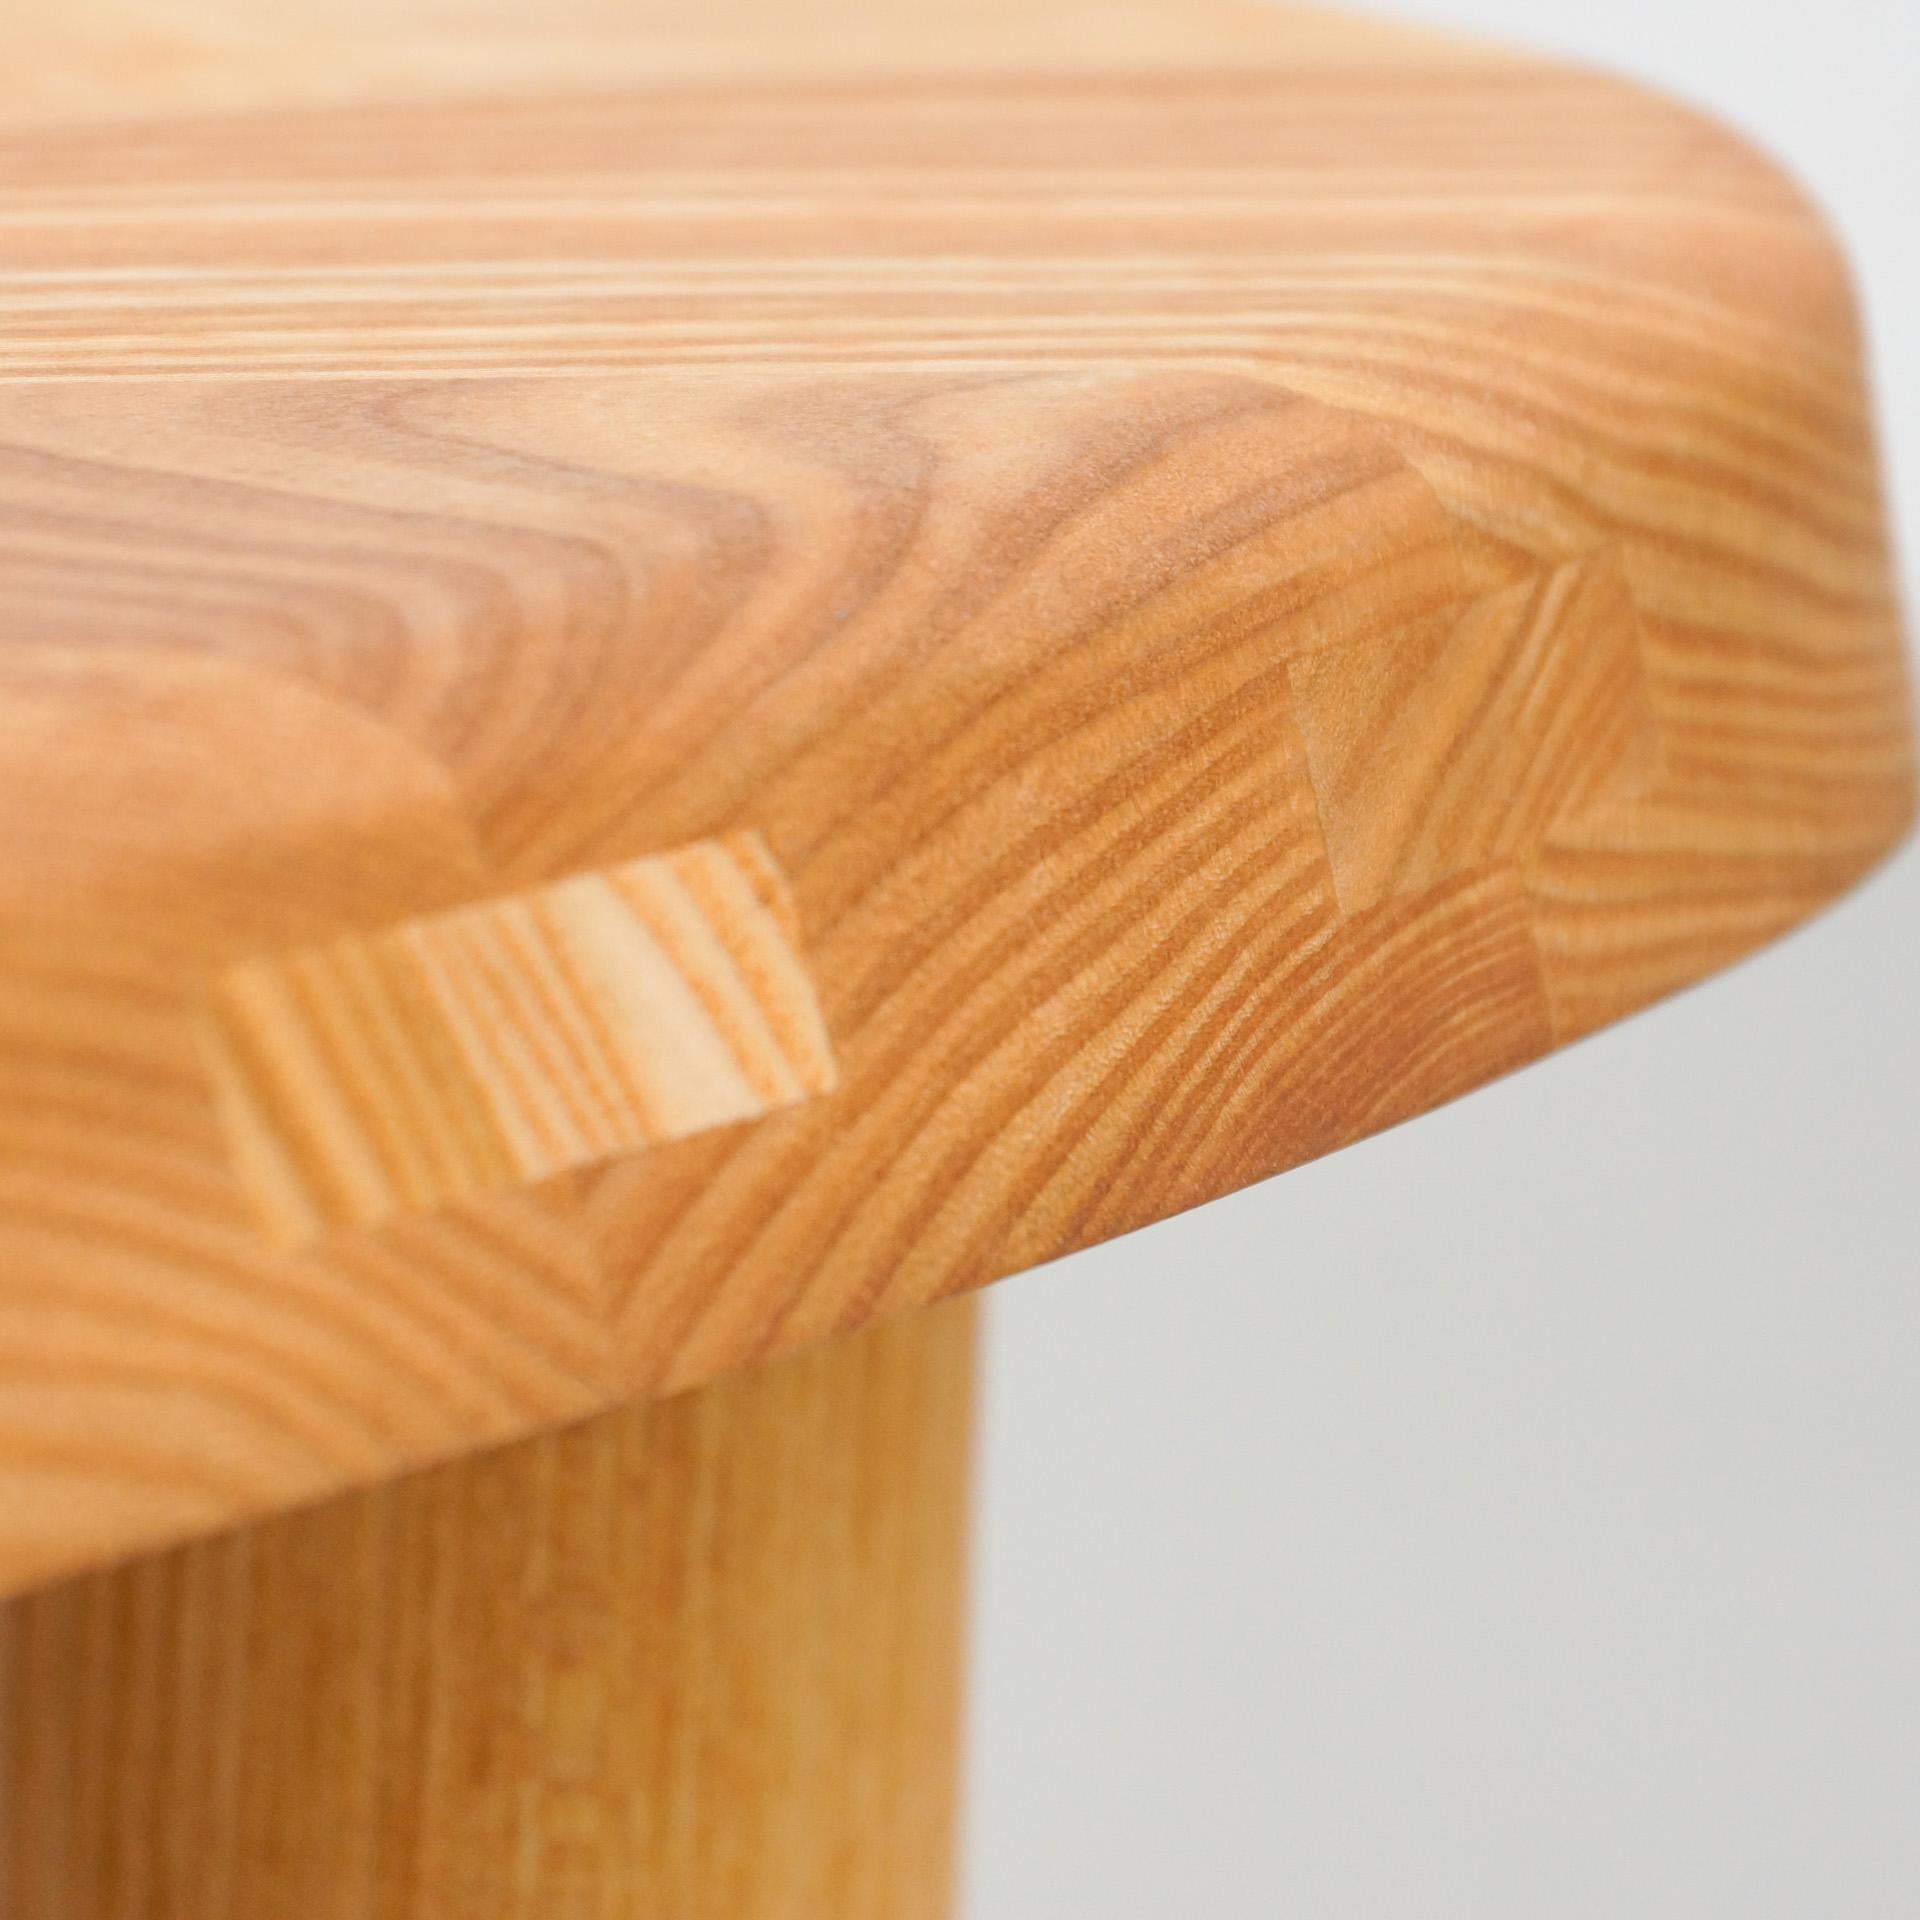 Pierre Chapo T23 Solid Elm Wood Formalist Side Table 1